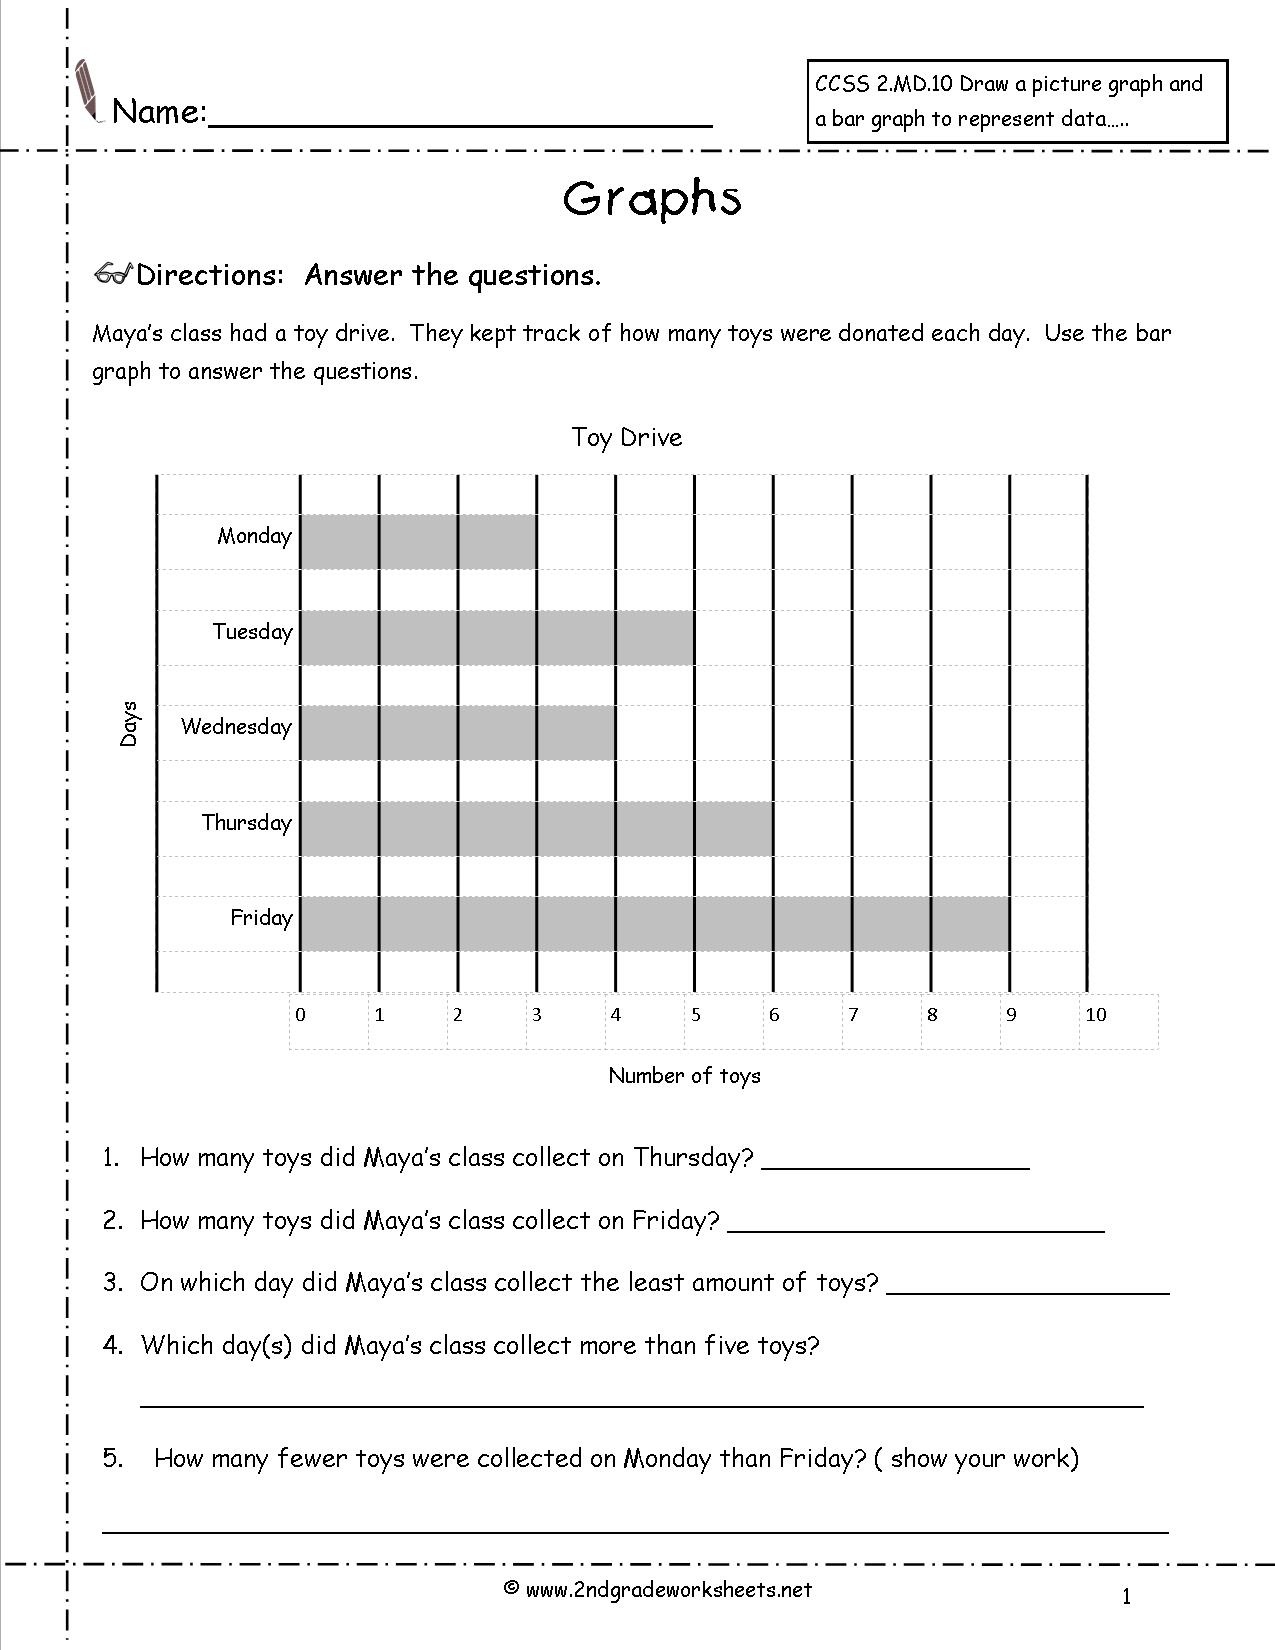 16 Sample Bar Graph Worksheet Templates | Free Pdf Documents - Free Printable Blank Bar Graph Worksheets